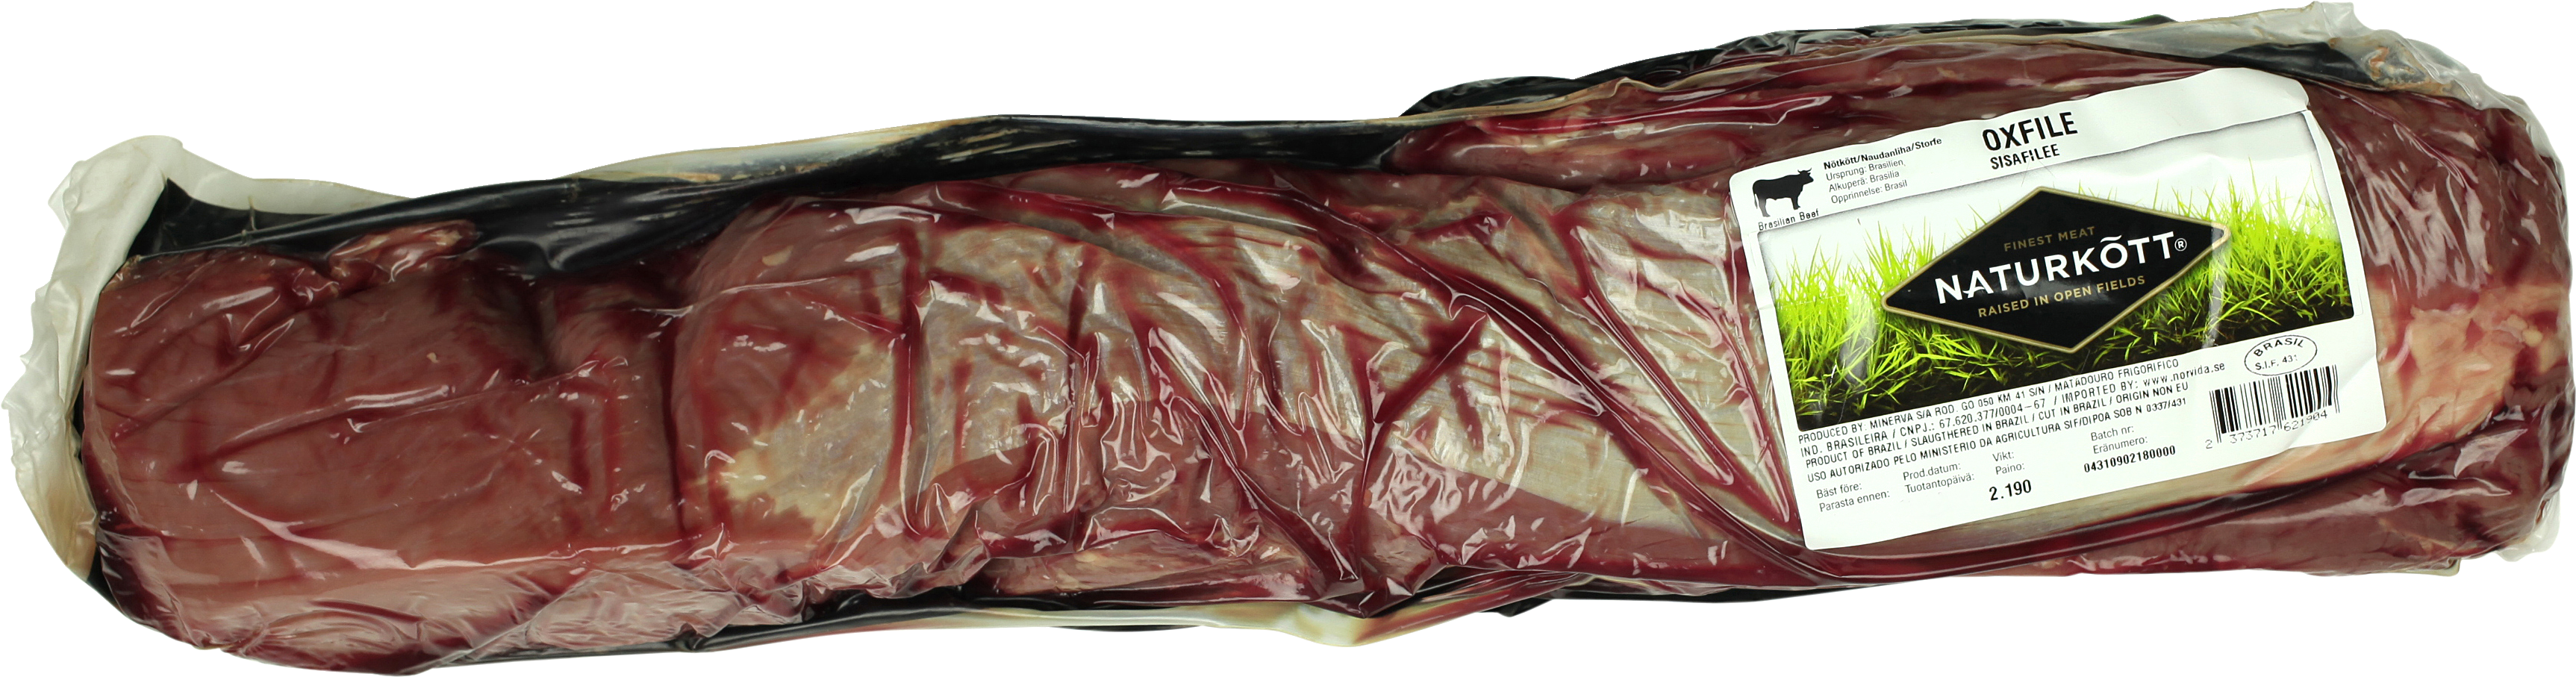 Naturkött Härän sisäfile n.1,9kg tuore